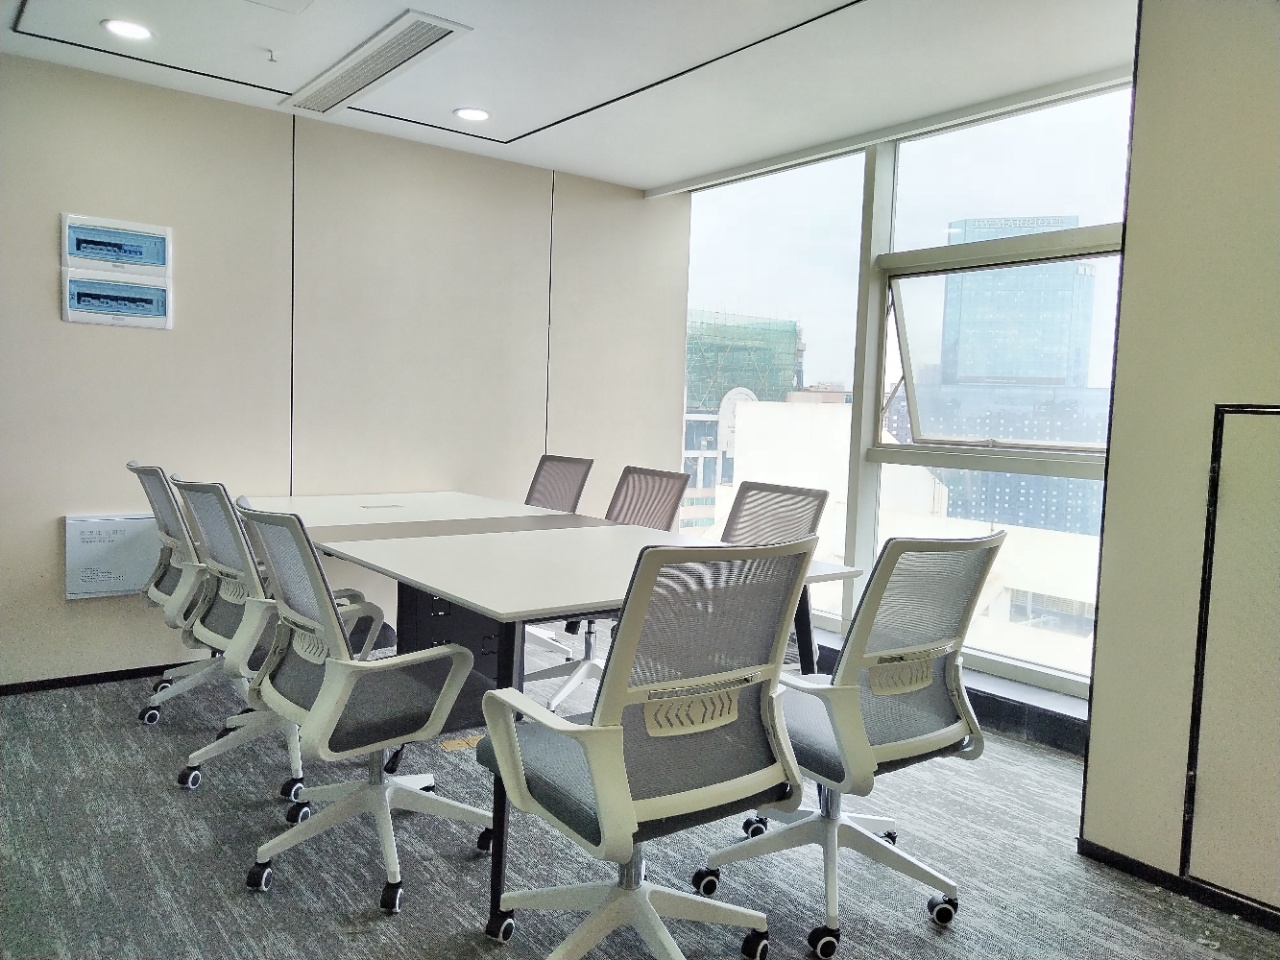 锦江区上普财富中心323平精装办公室带家具 户型方正  采光通透